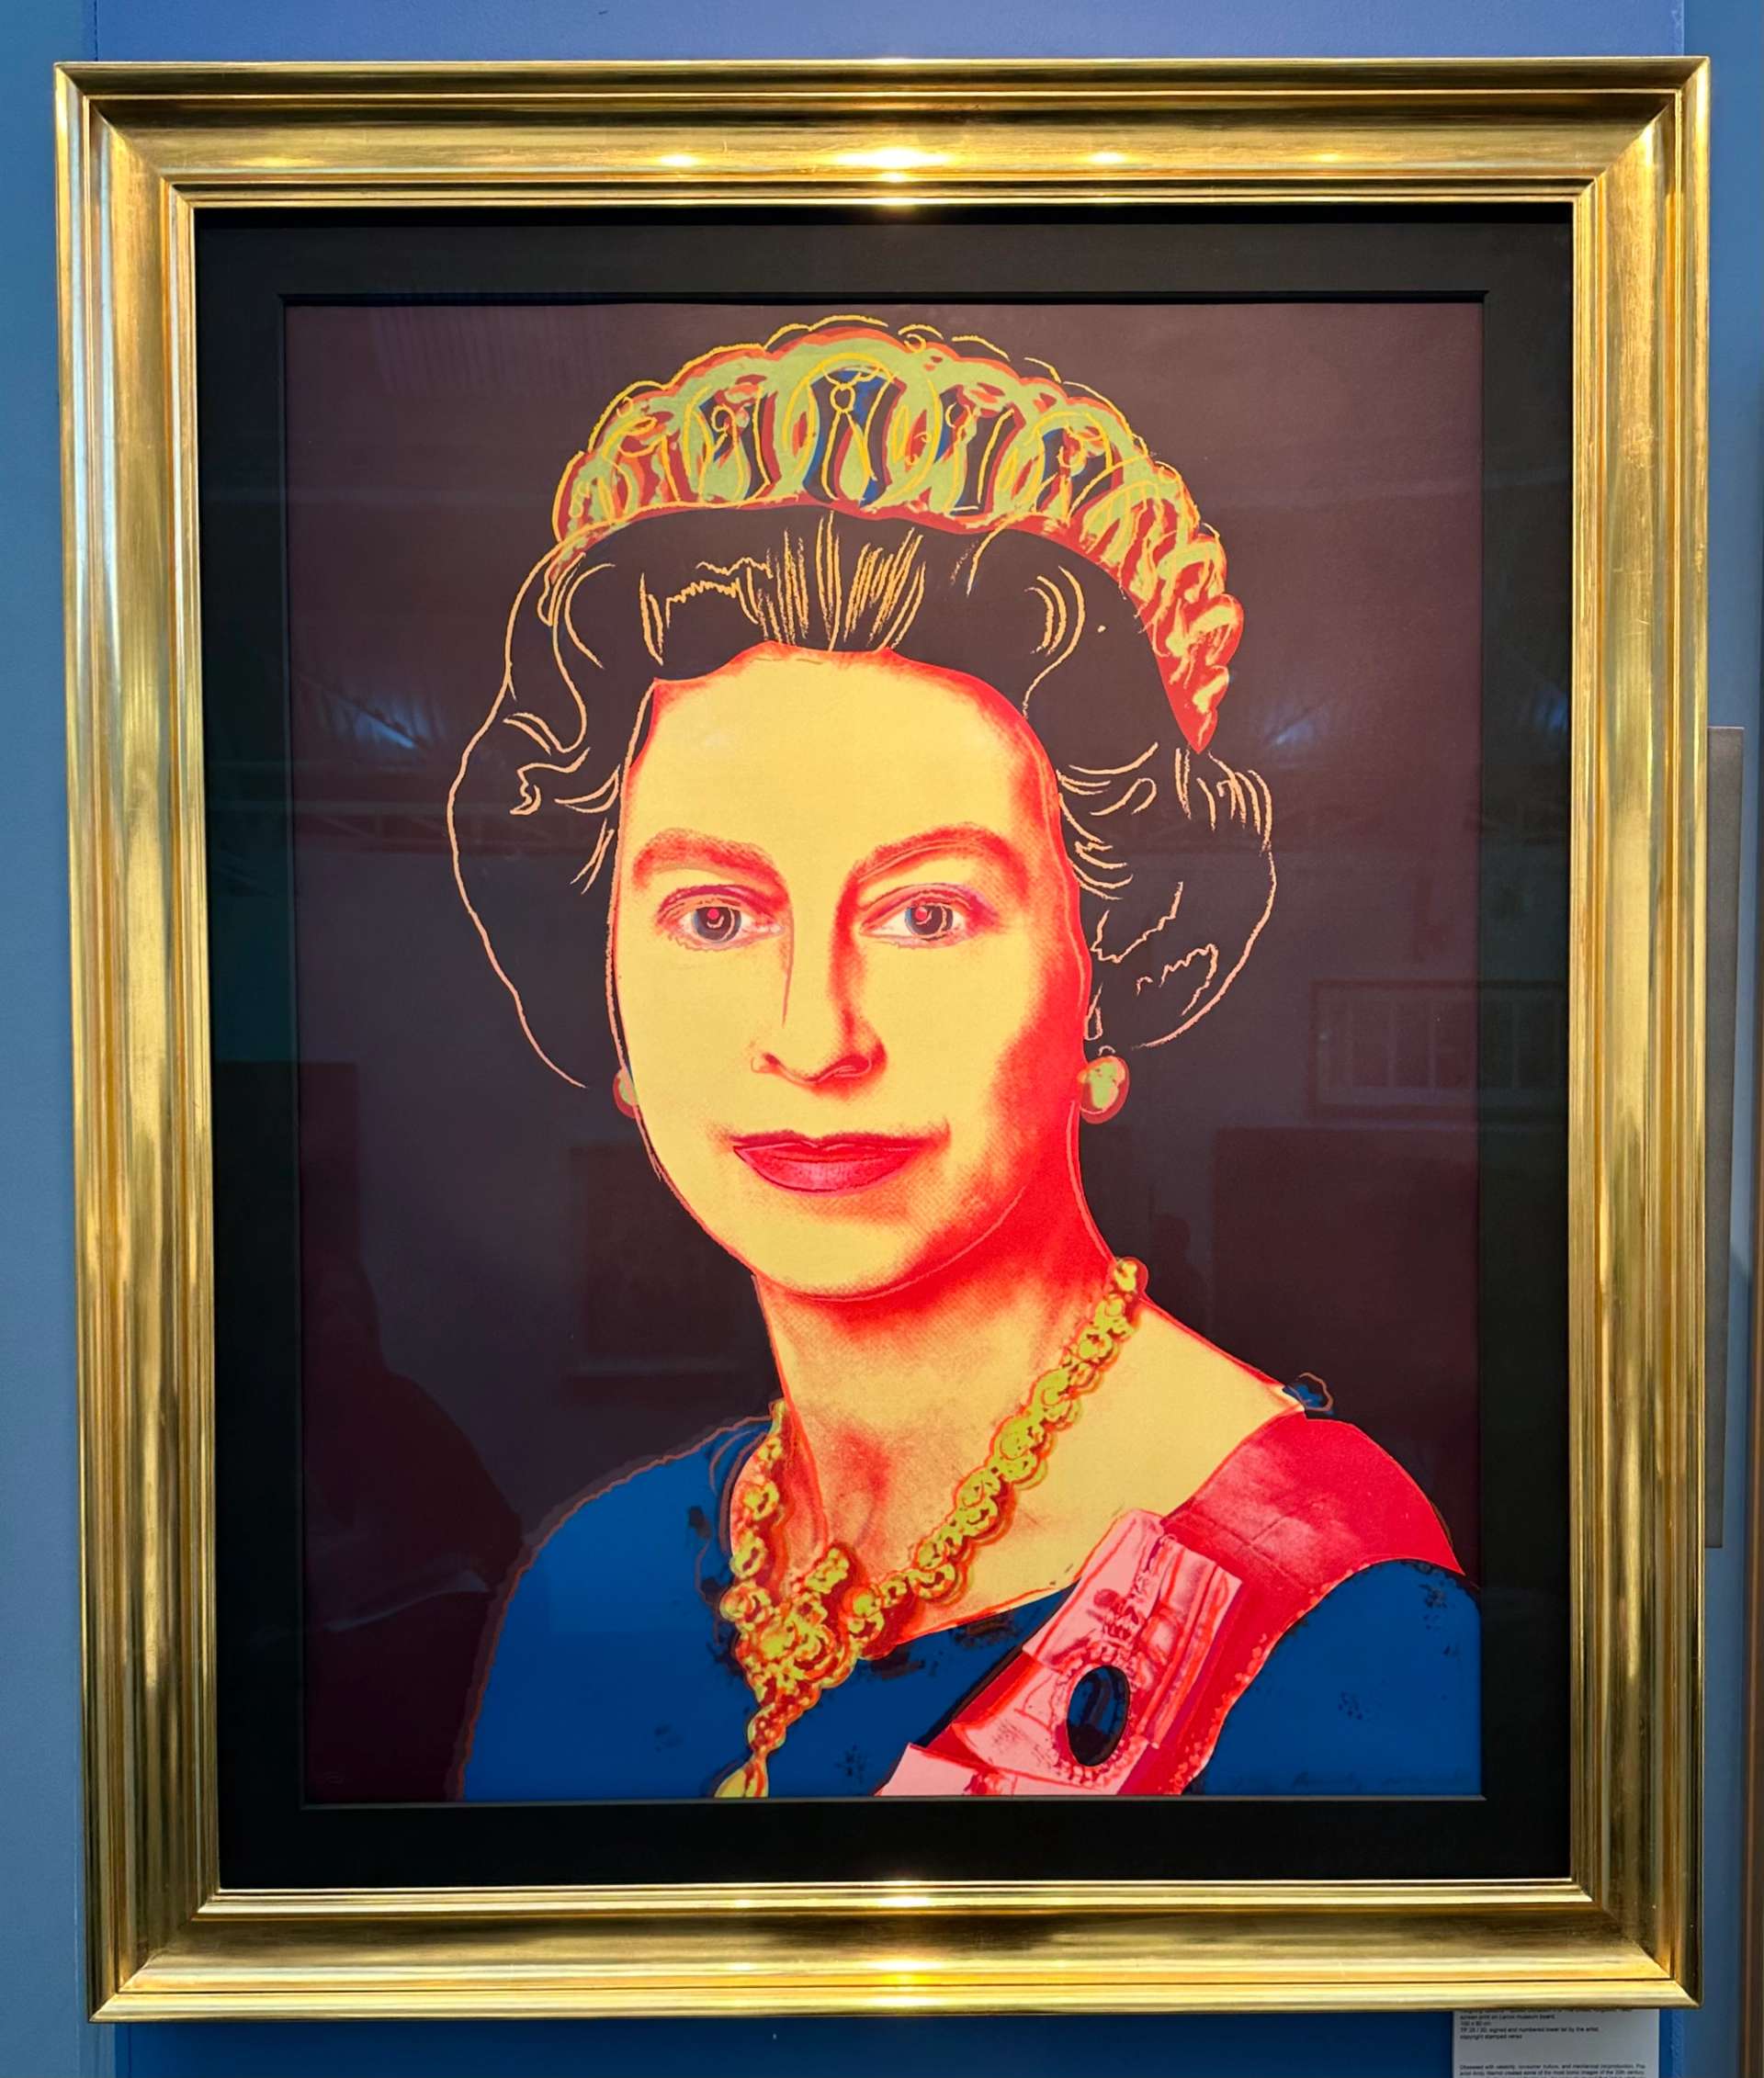 A screenprint depicting the royal portrait of Queen Elizabeth II.